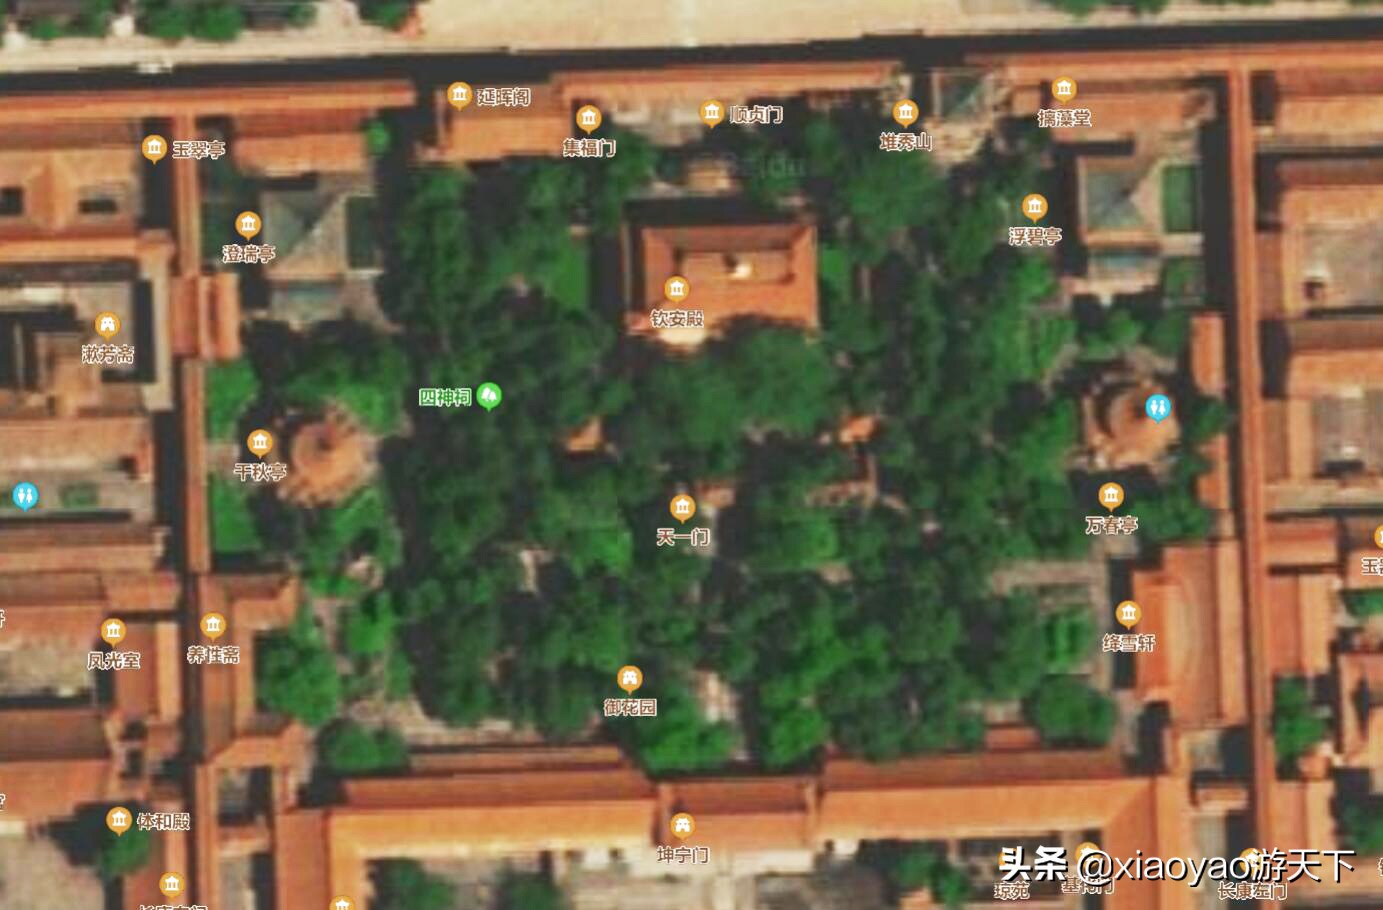 中国明清第一皇家园林——故宫御花园